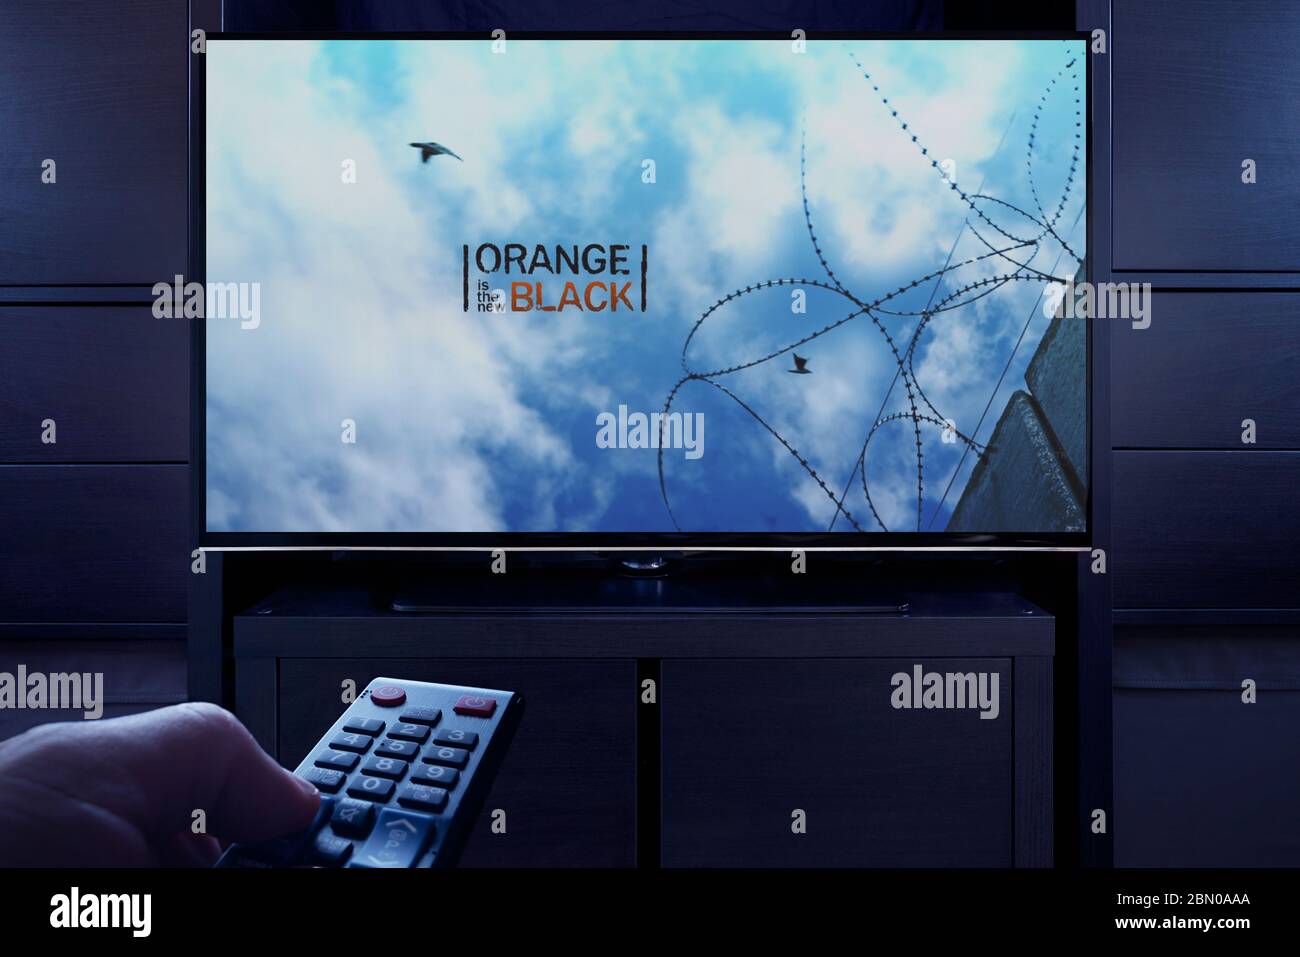 Un homme pointe une télécommande vers le téléviseur qui affiche l'écran principal de titre Orange est le nouveau noir (usage éditorial uniquement). Banque D'Images